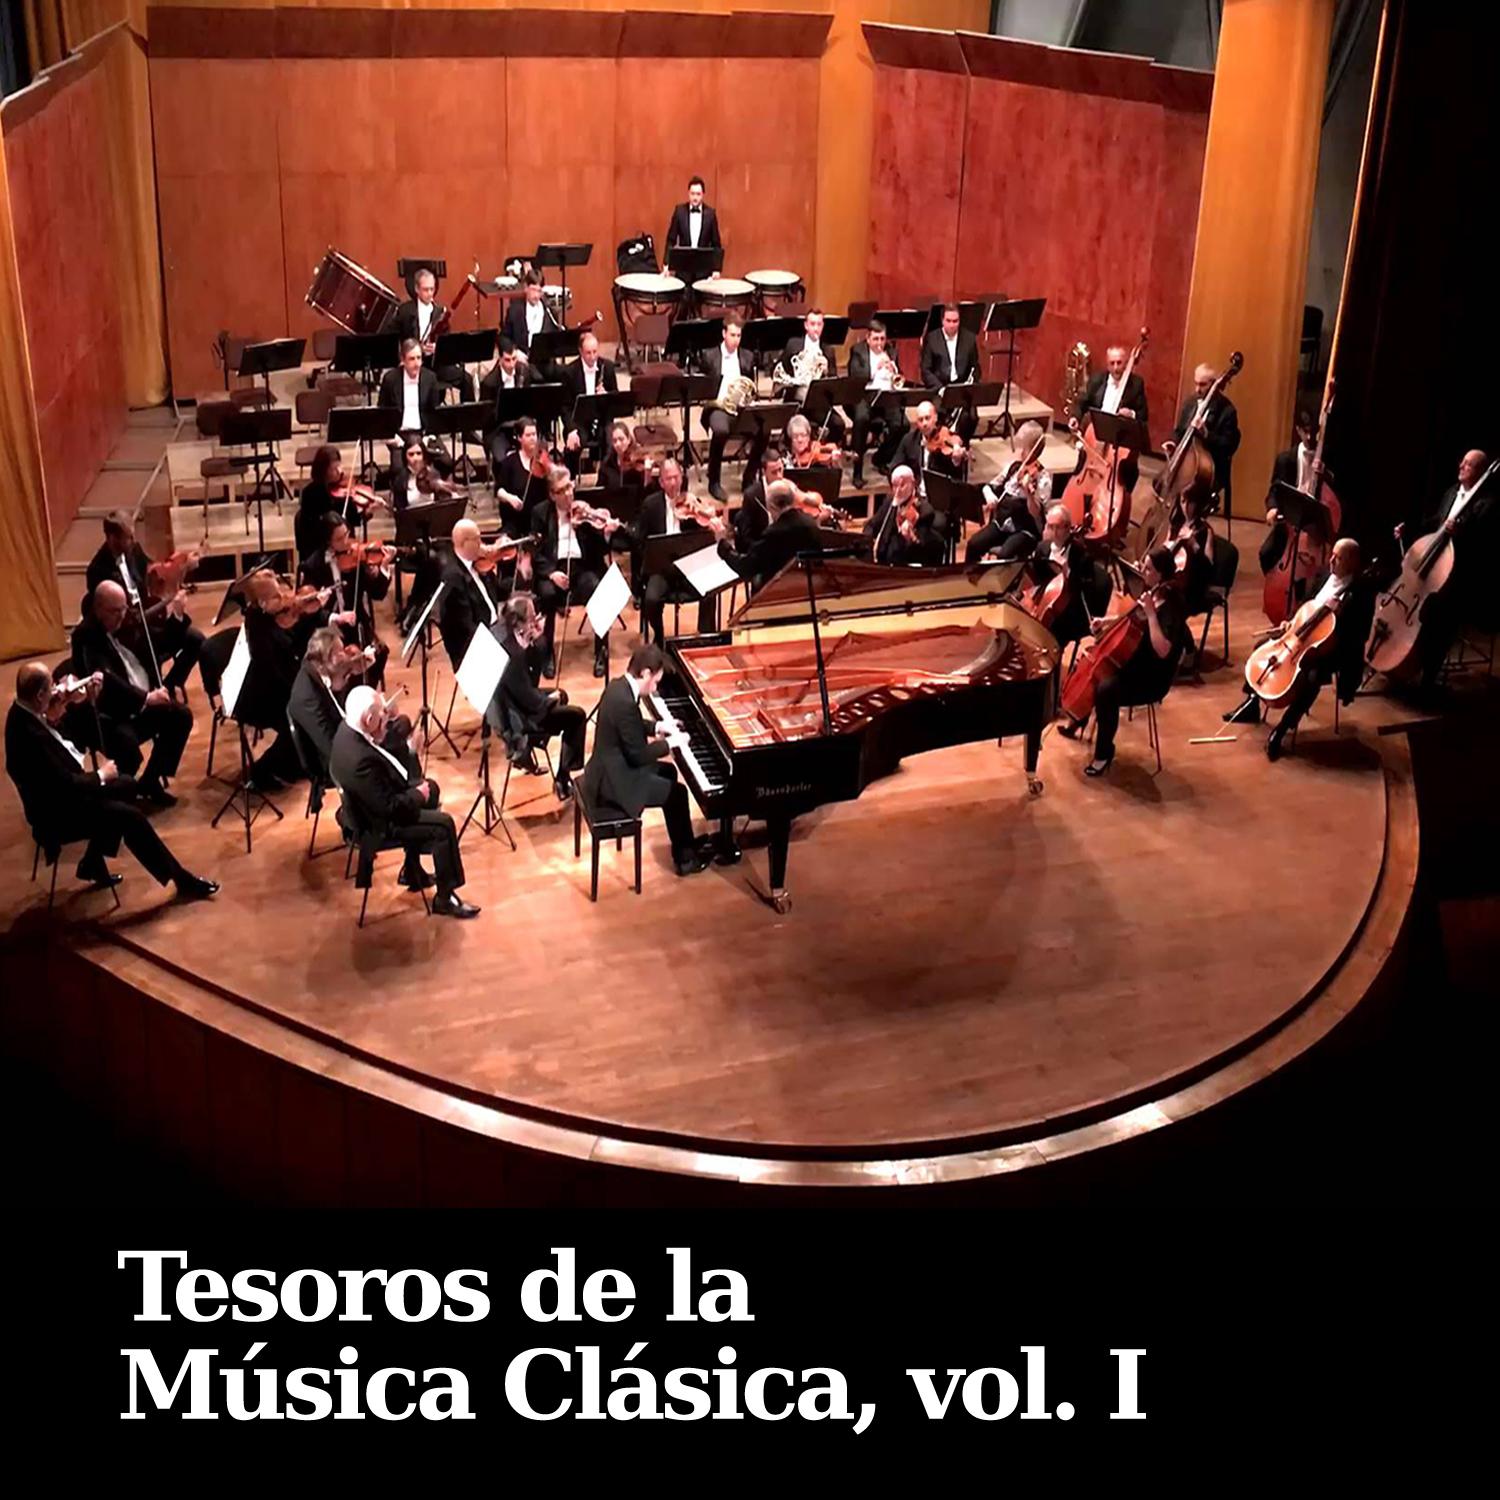 Piano Concerto No. 21 in C Major, KV467 "Elvira Madigan": II. Andante